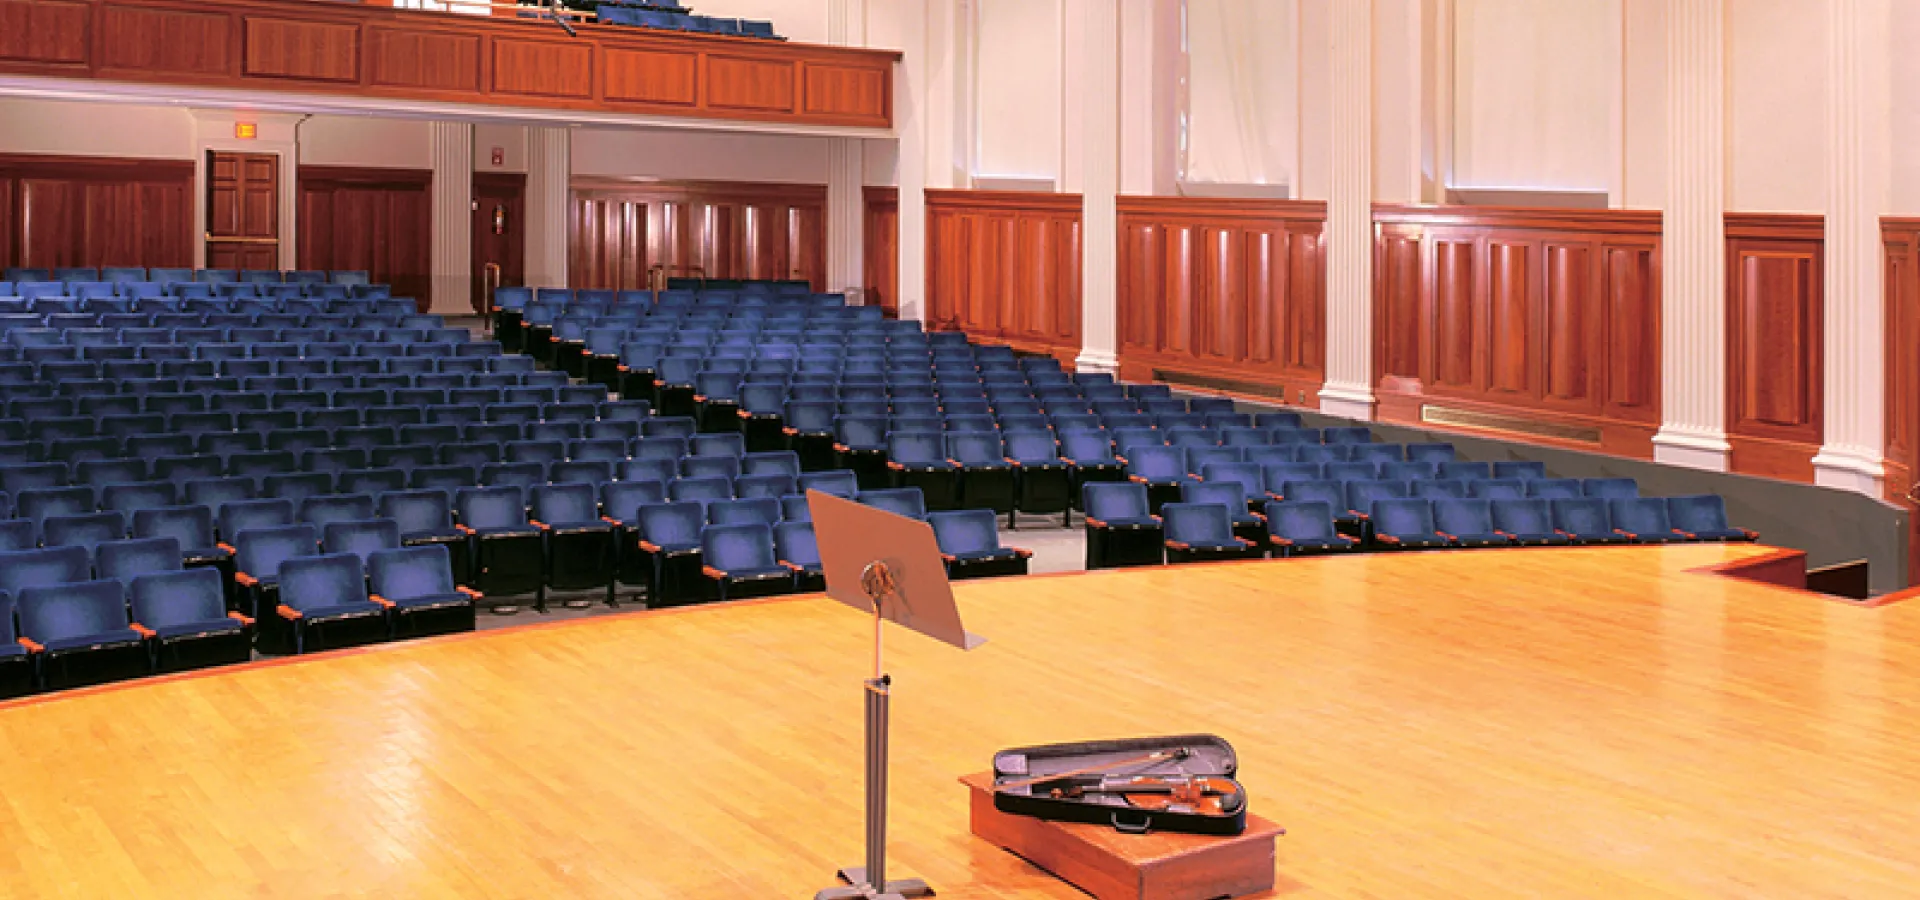 Seats in Sweeney Concert Hall